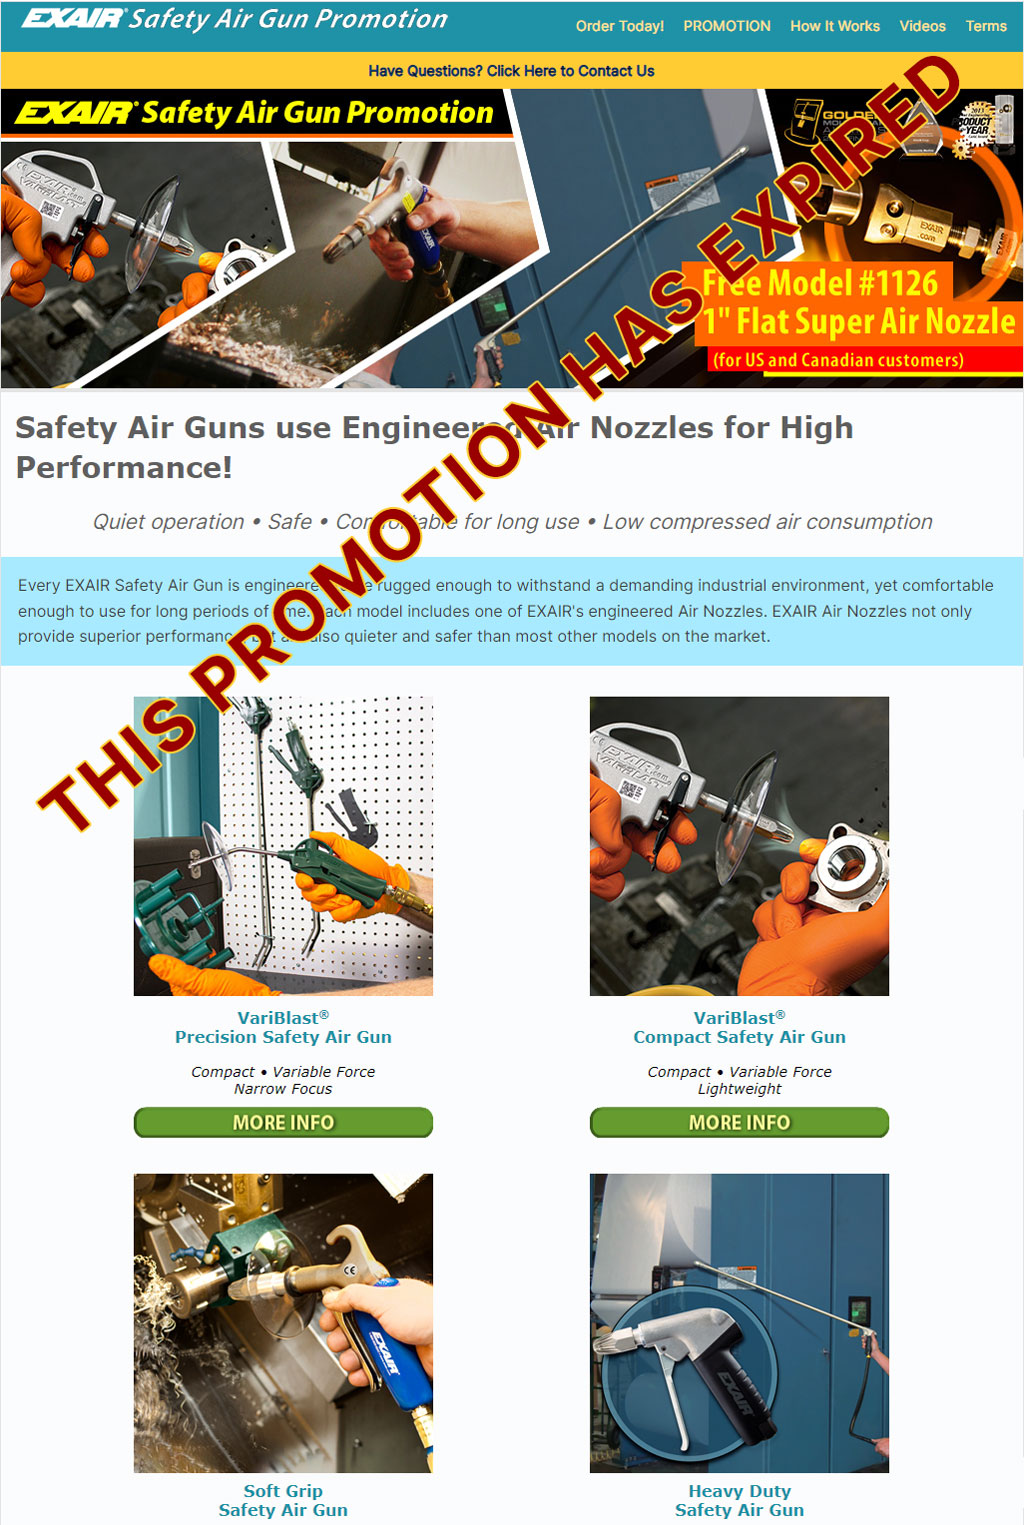 EXAIR Safety Air Guns